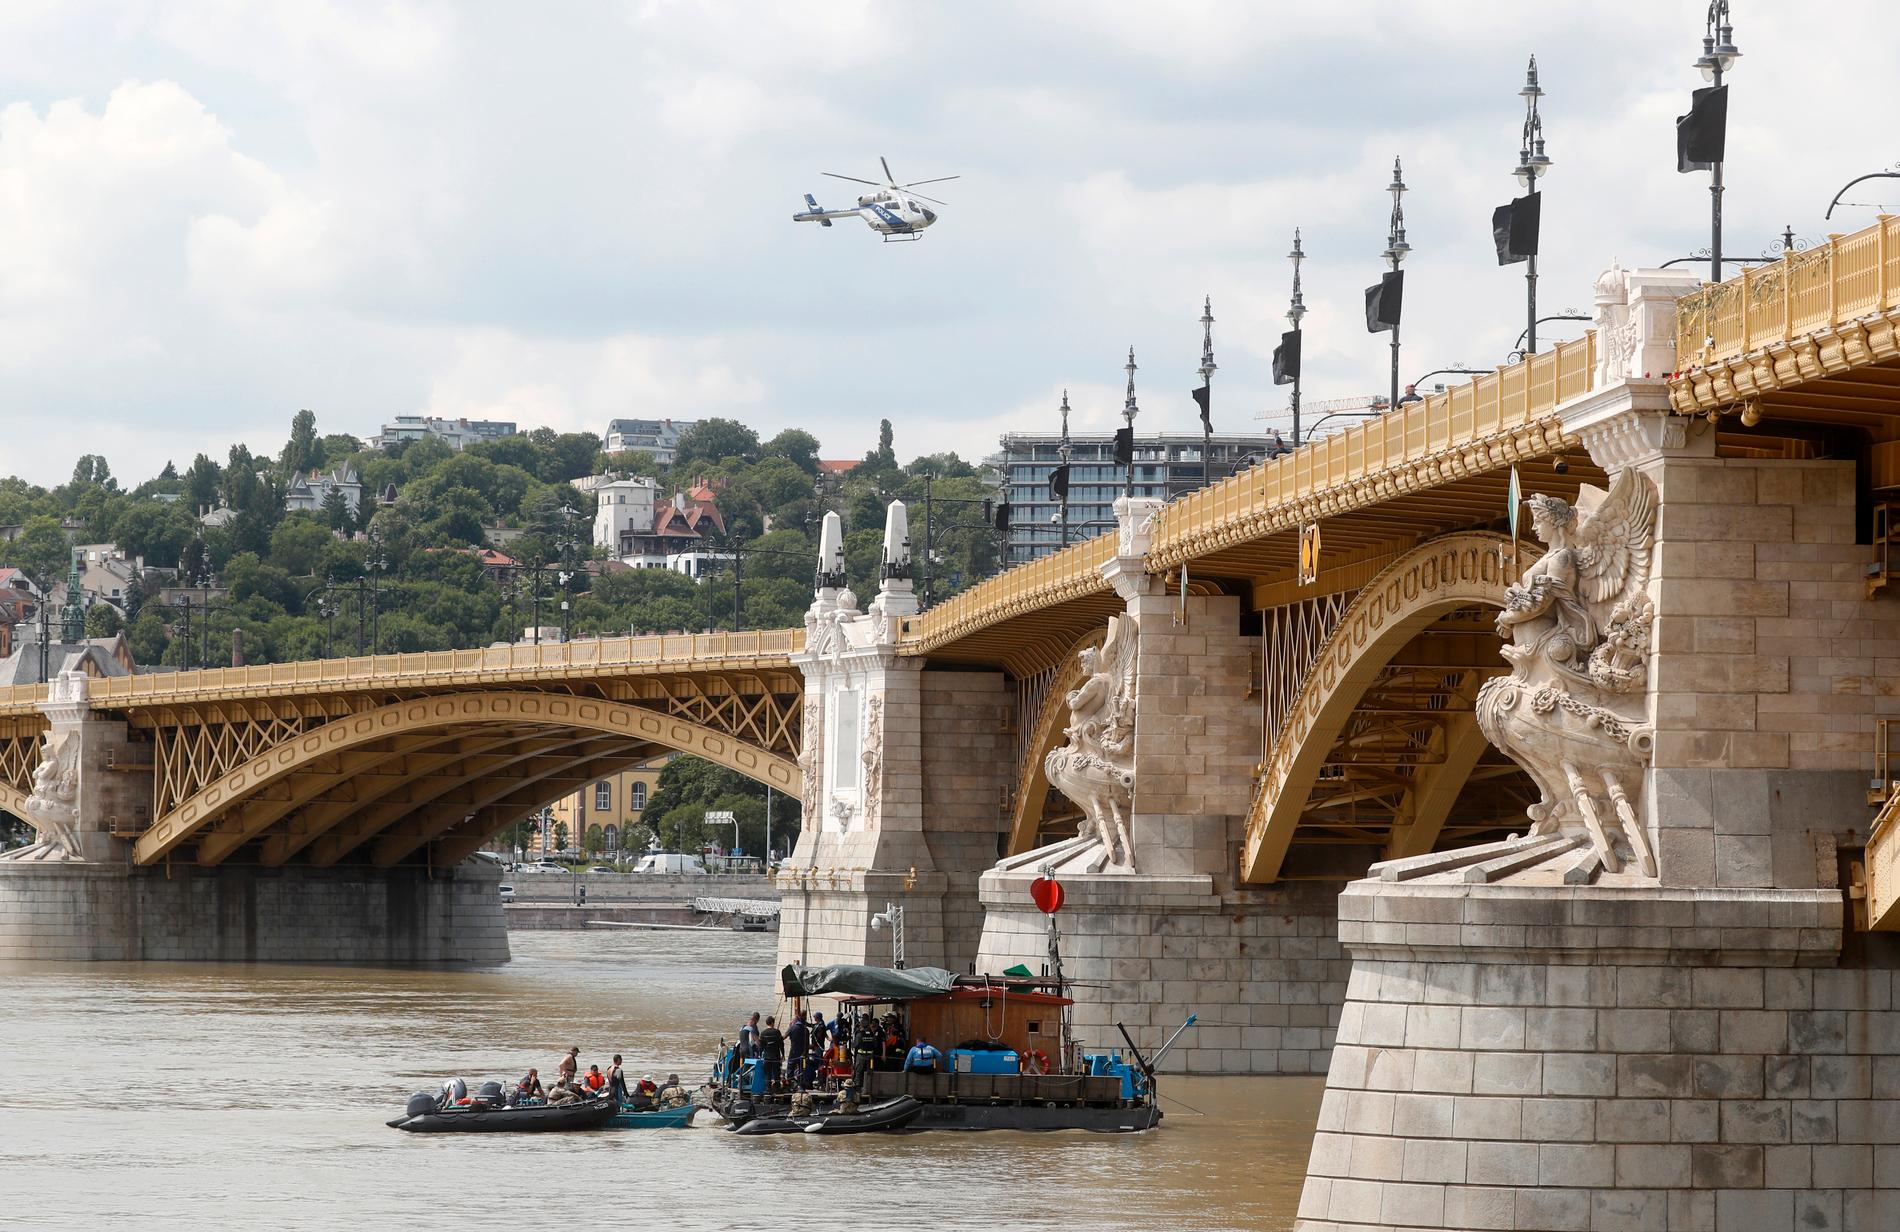 Sökinsatsen pågår ännu efter förra veckans båtolycka i centrala Budapest.